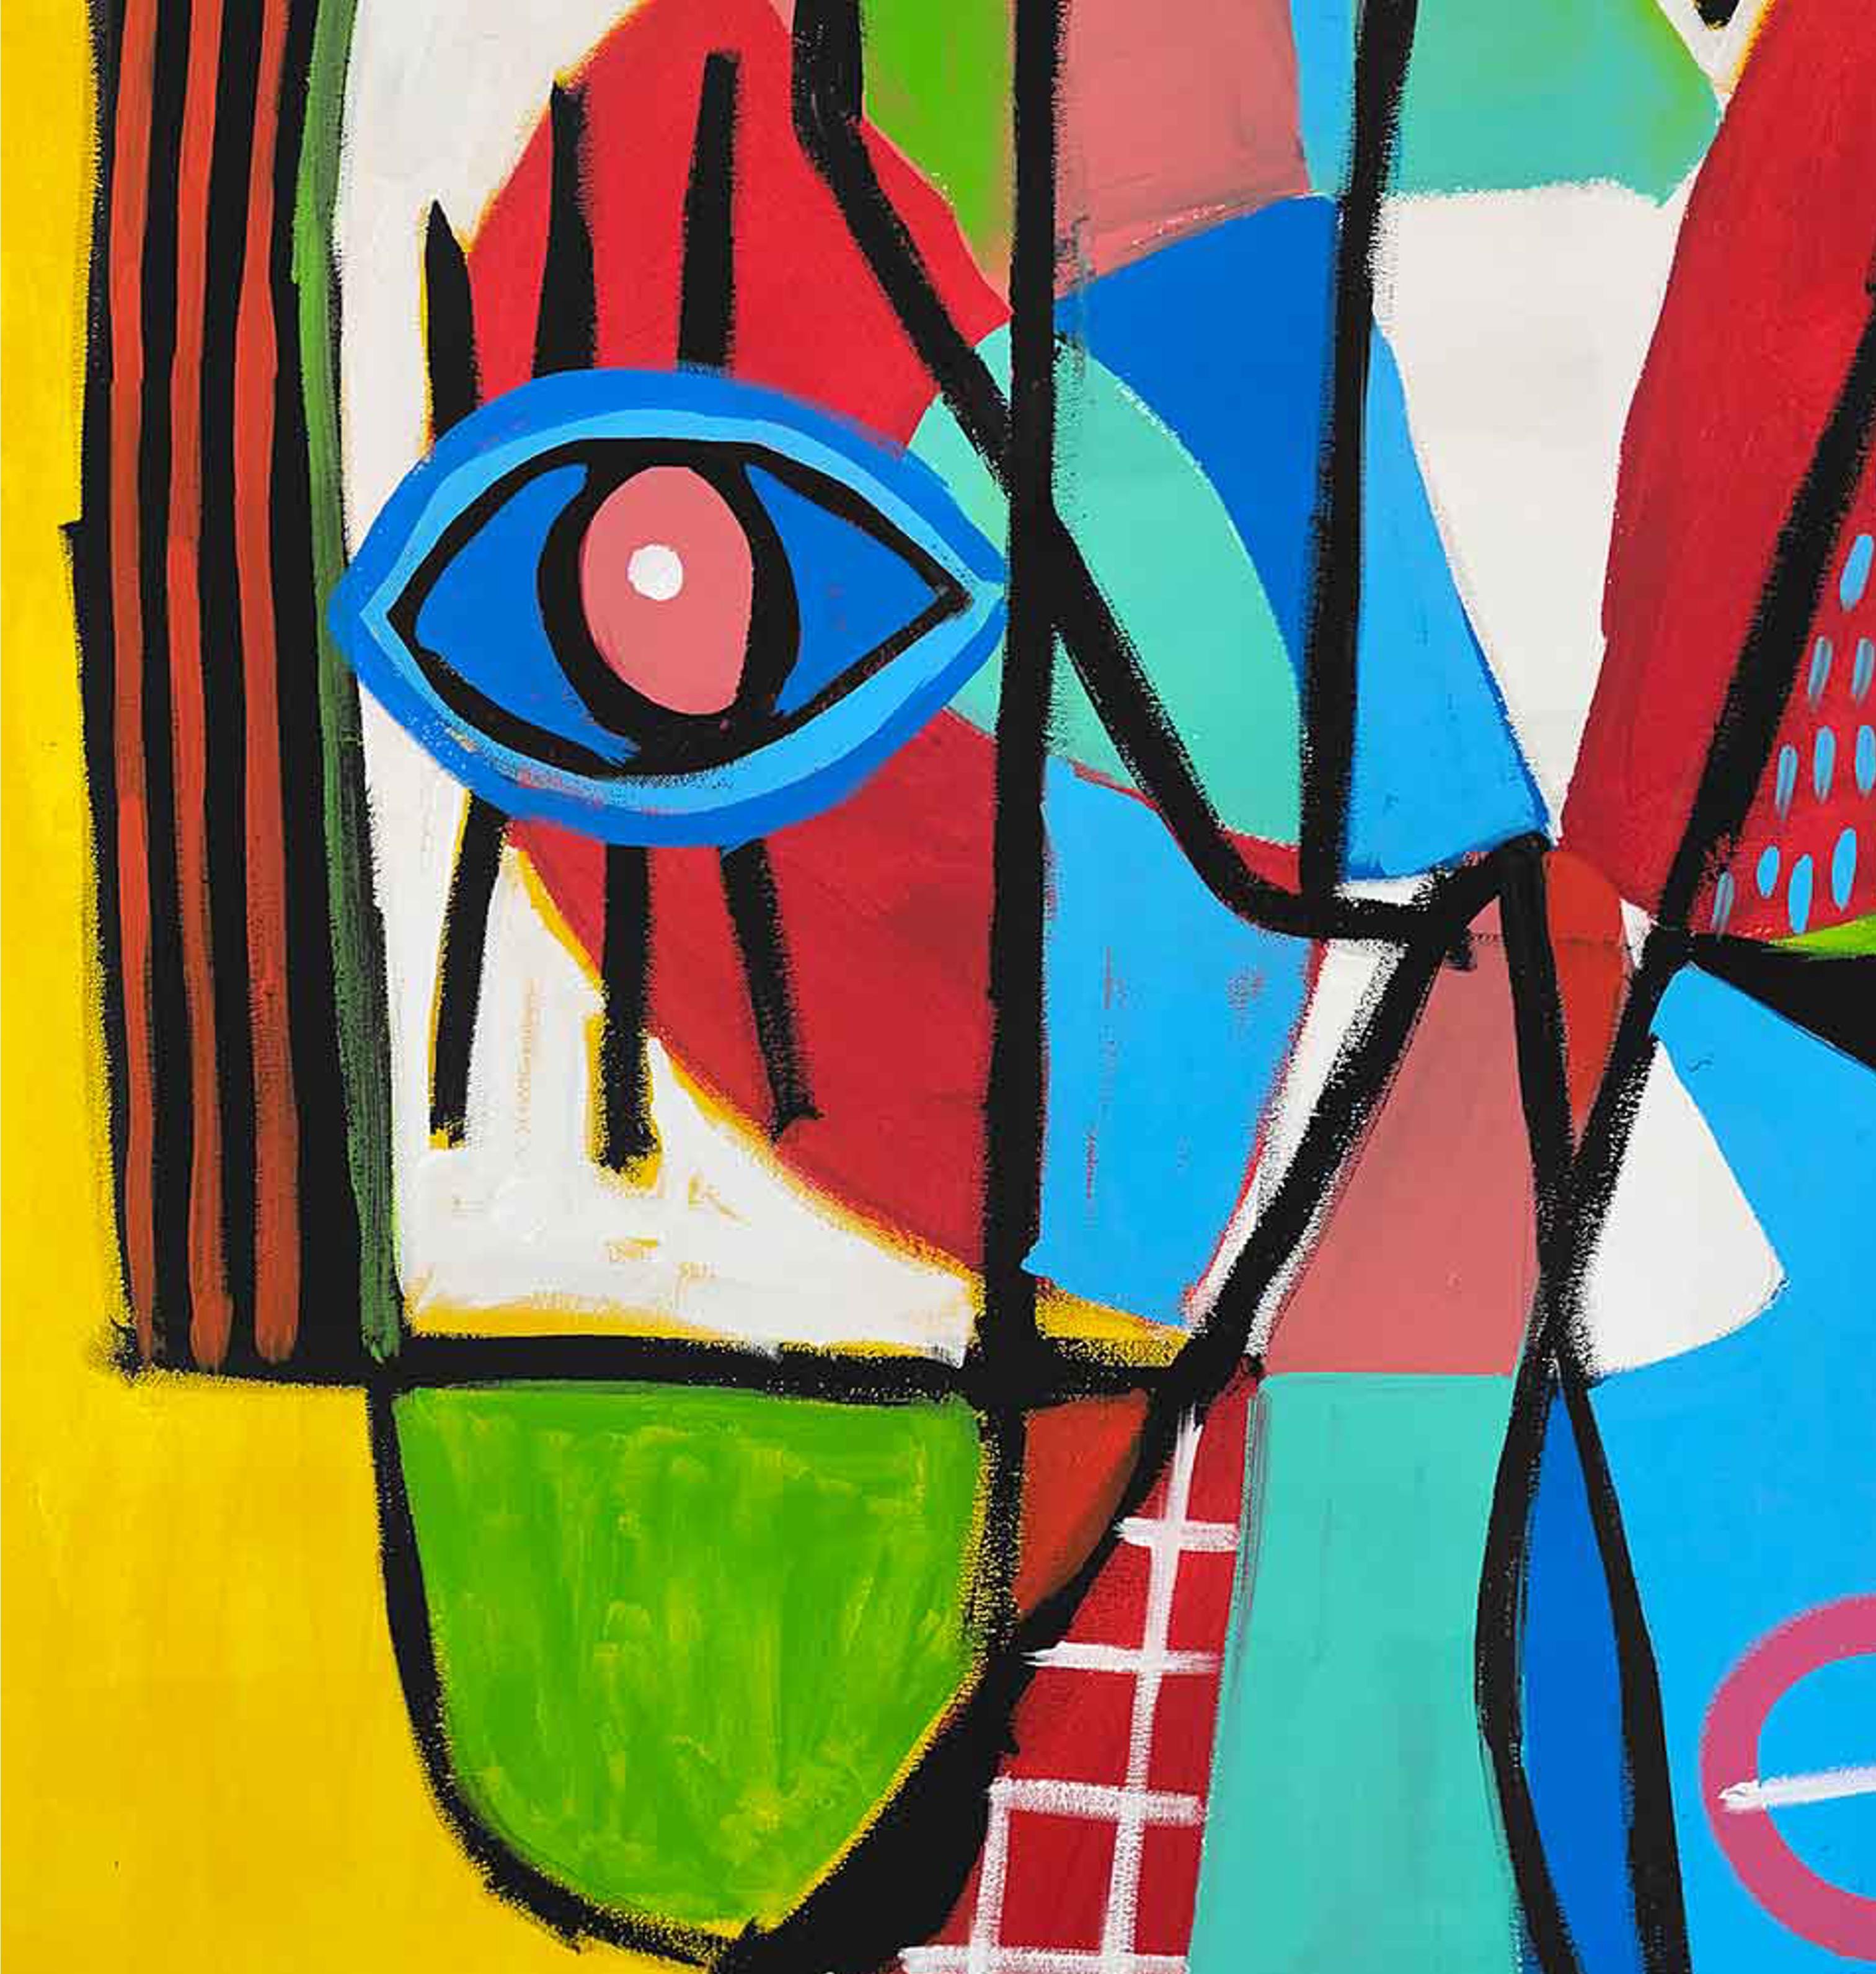 Art contemporain, peinture abstraite
Acrylique sur toile
183x153cm
Signé 




A propos de l'artiste
Enrique Pichardo (Mexico, 1973) est diplômé de l'Escuela Nacional de Pintura, Escultura y Grabado (ENPEG) 